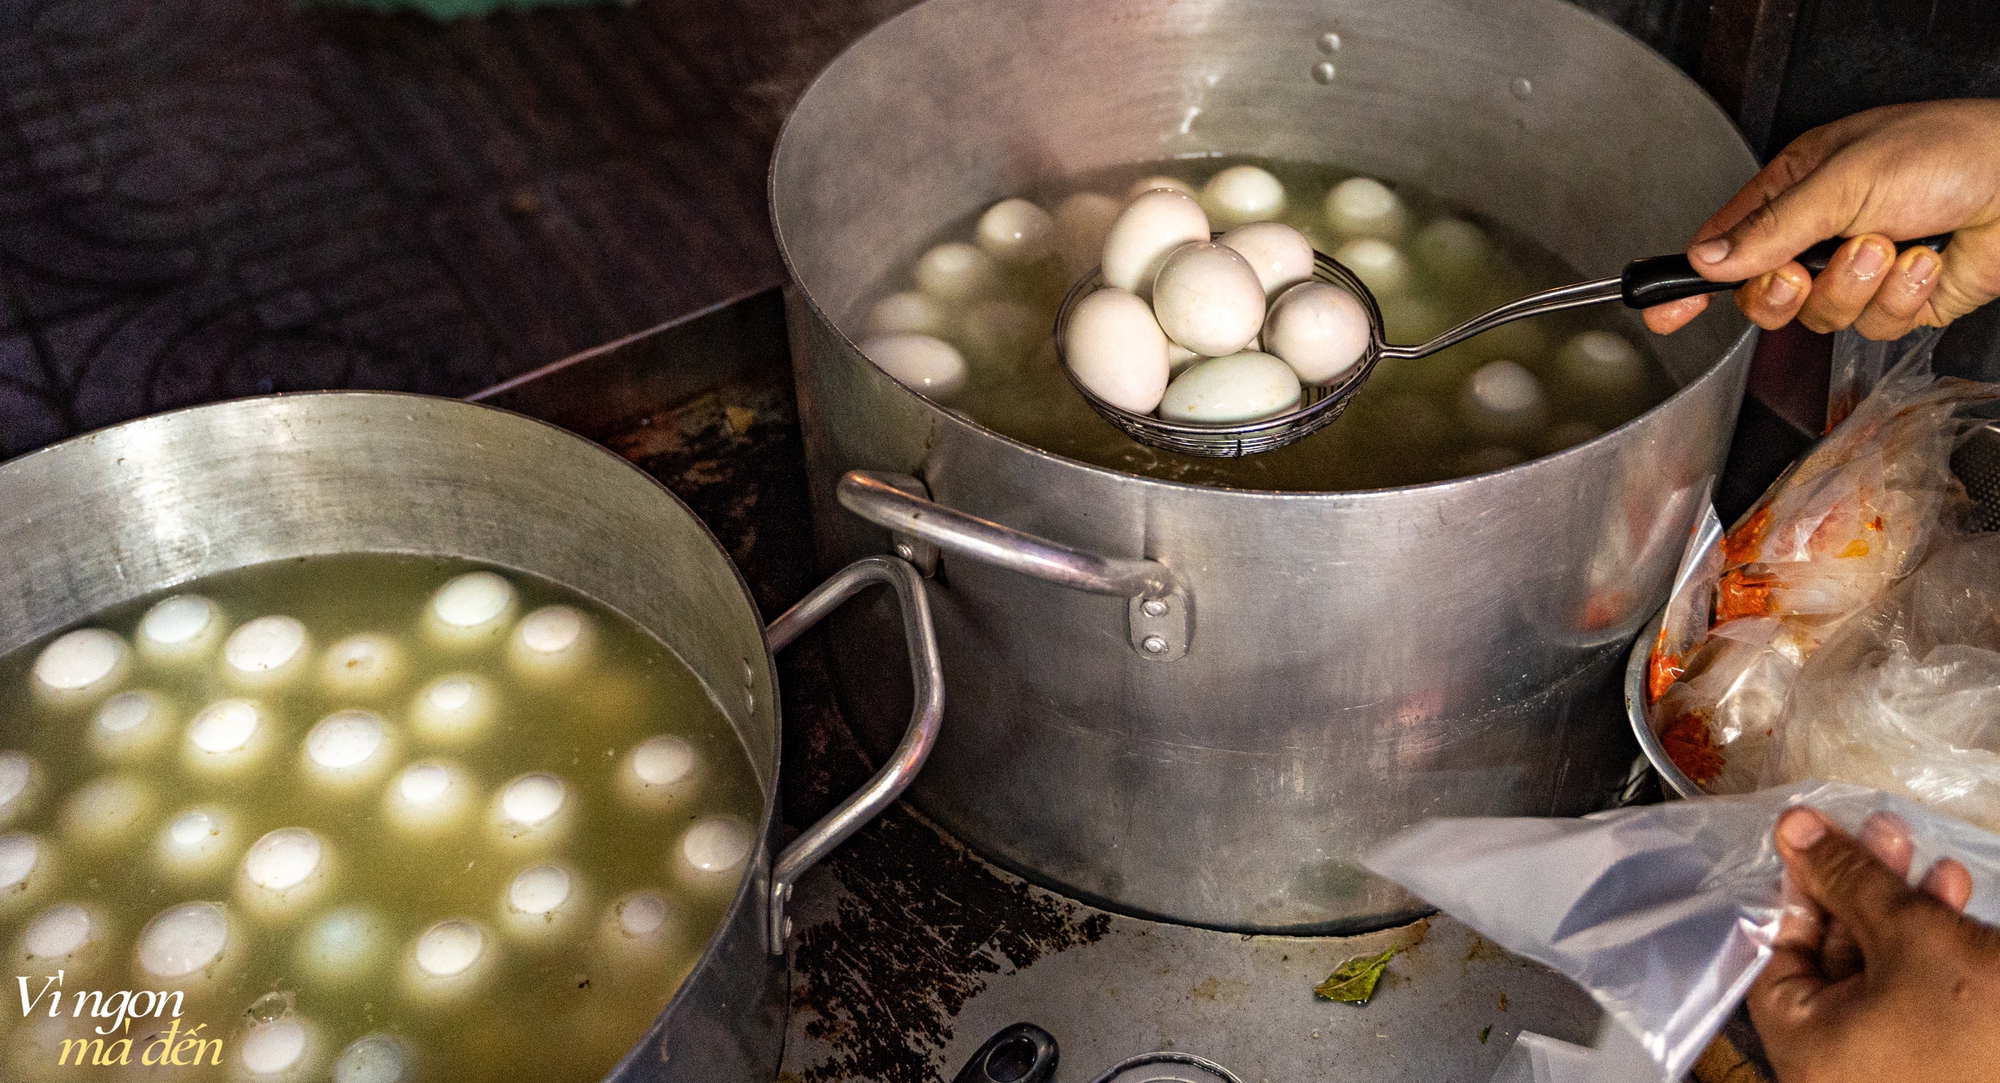 Bán hột vịt lộn mua được nhà: Cửa tiệm mỗi ngày bán hơn 1.000 trứng, bí quyết từ việc luộc bằng nước dừa và làm muối tiêu xay nhuyễn 